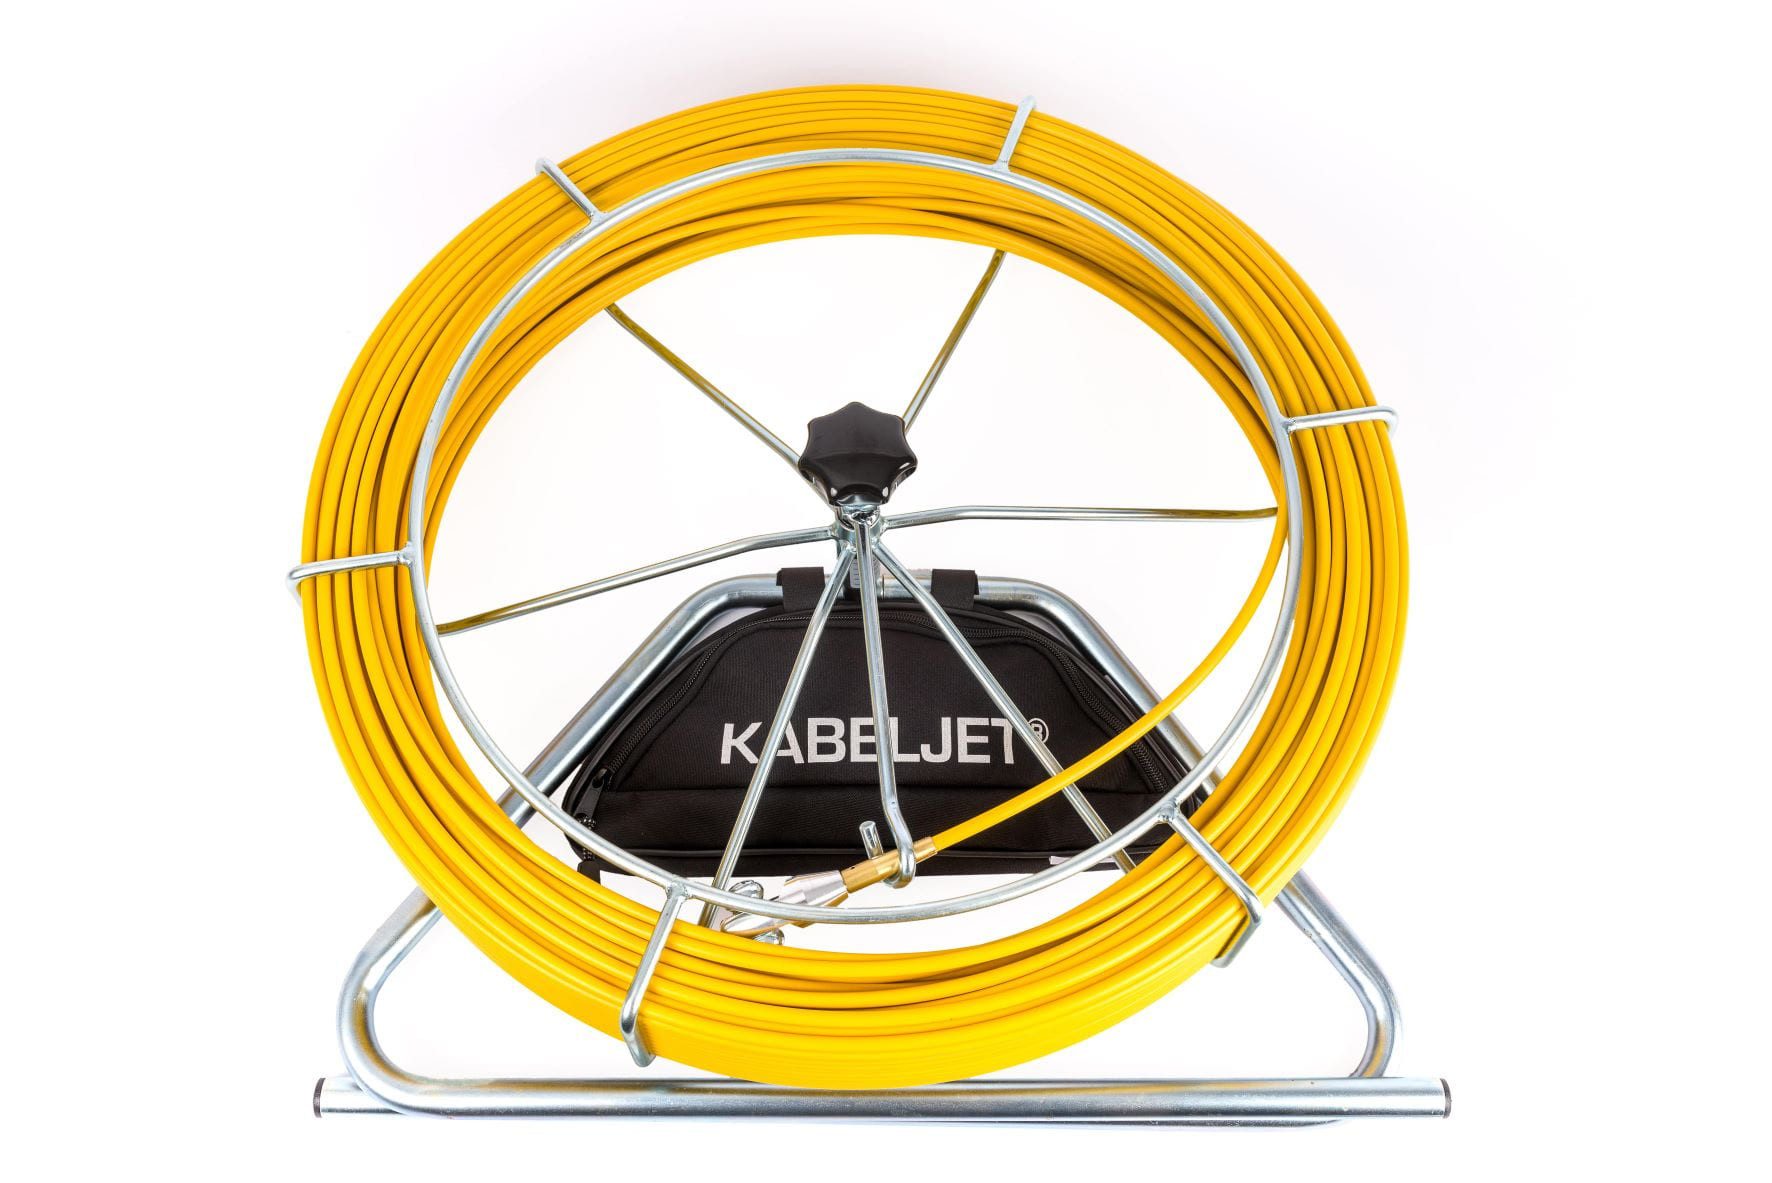 Katimex Kabelführung Kabeljet® mit Service Set u. Tasche, 80 Meter